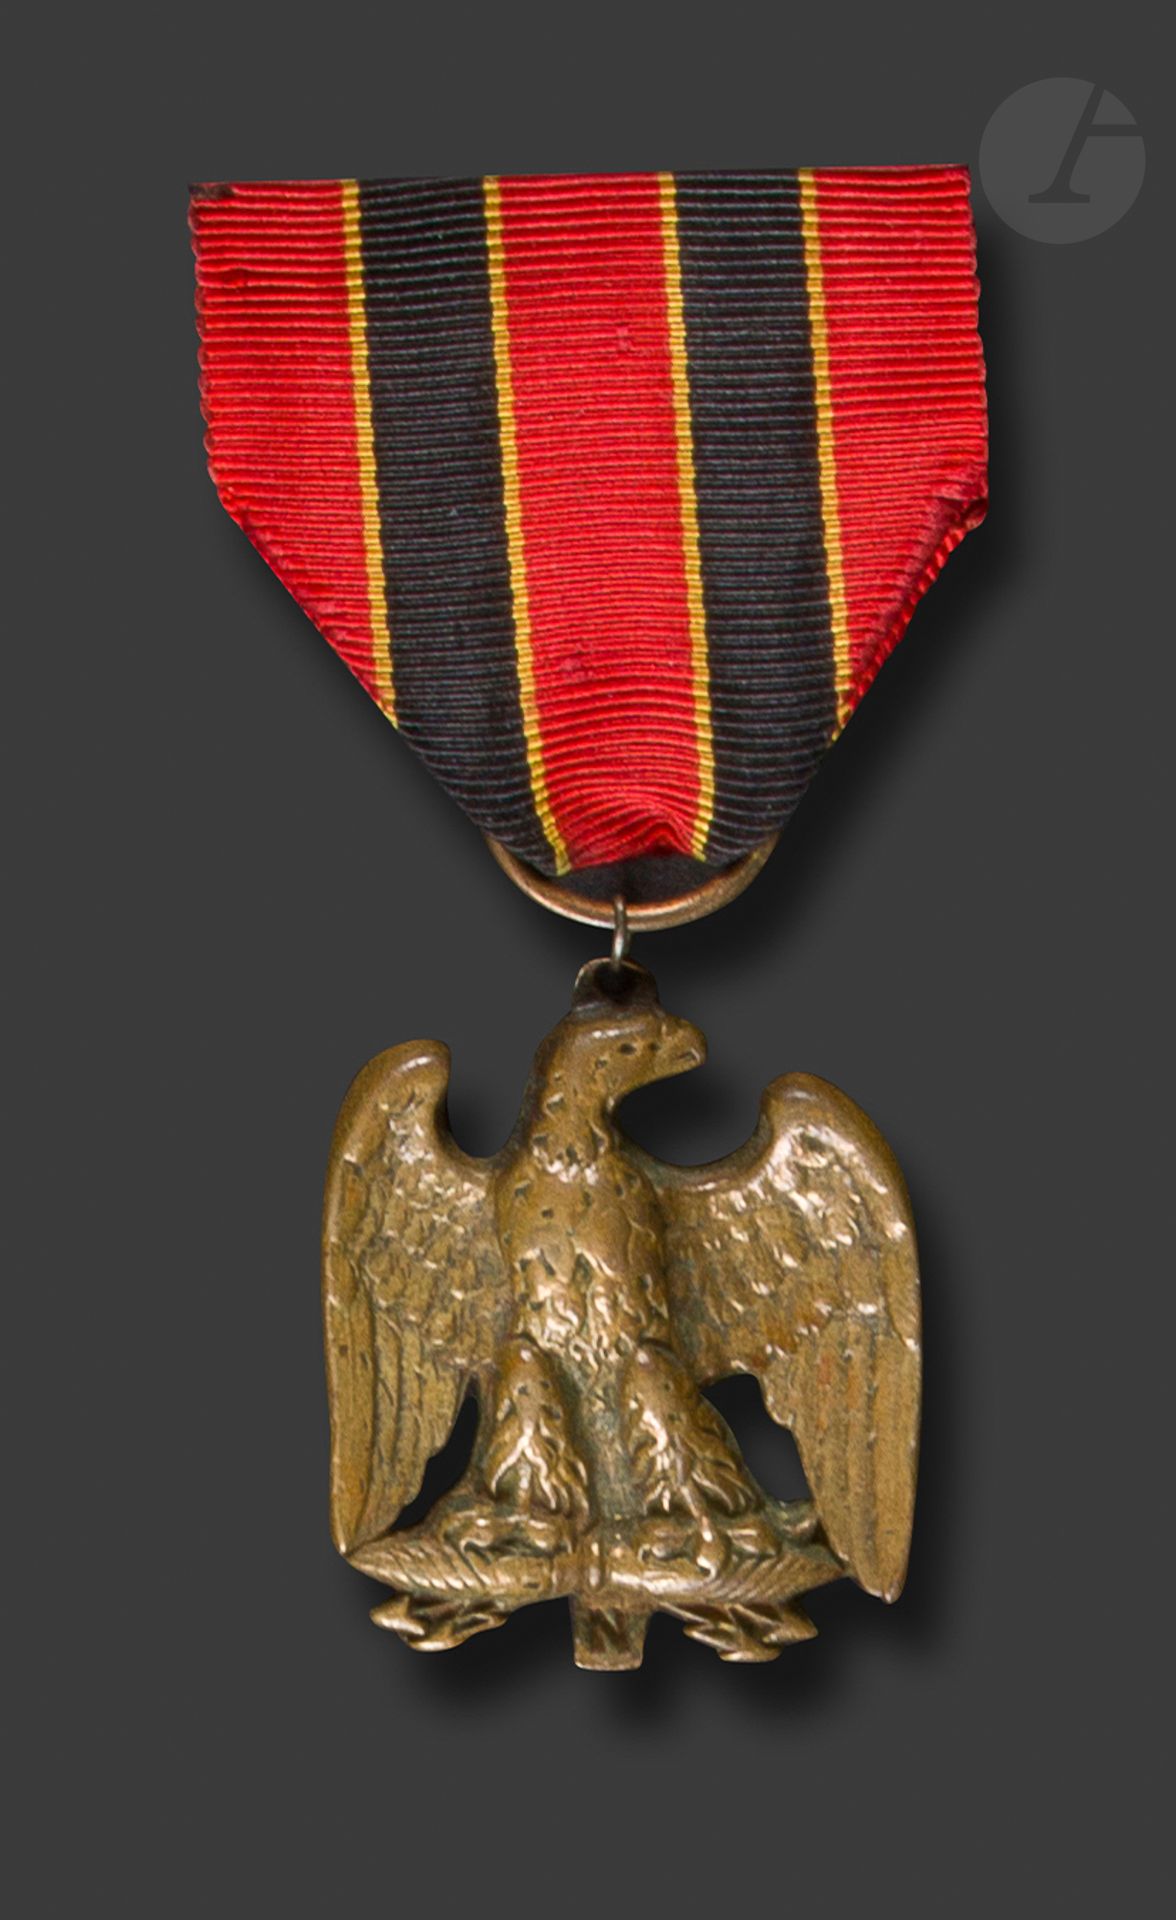 Null 第一帝国的退伍军人贝尔格莱德
协会徽章，带有帝国之鹰
。
 
青铜铸造，尾部印有 "N"。纯粹的反面。悬挂的环形物改变了。
带有比利时色彩的丝带。
3&hellip;